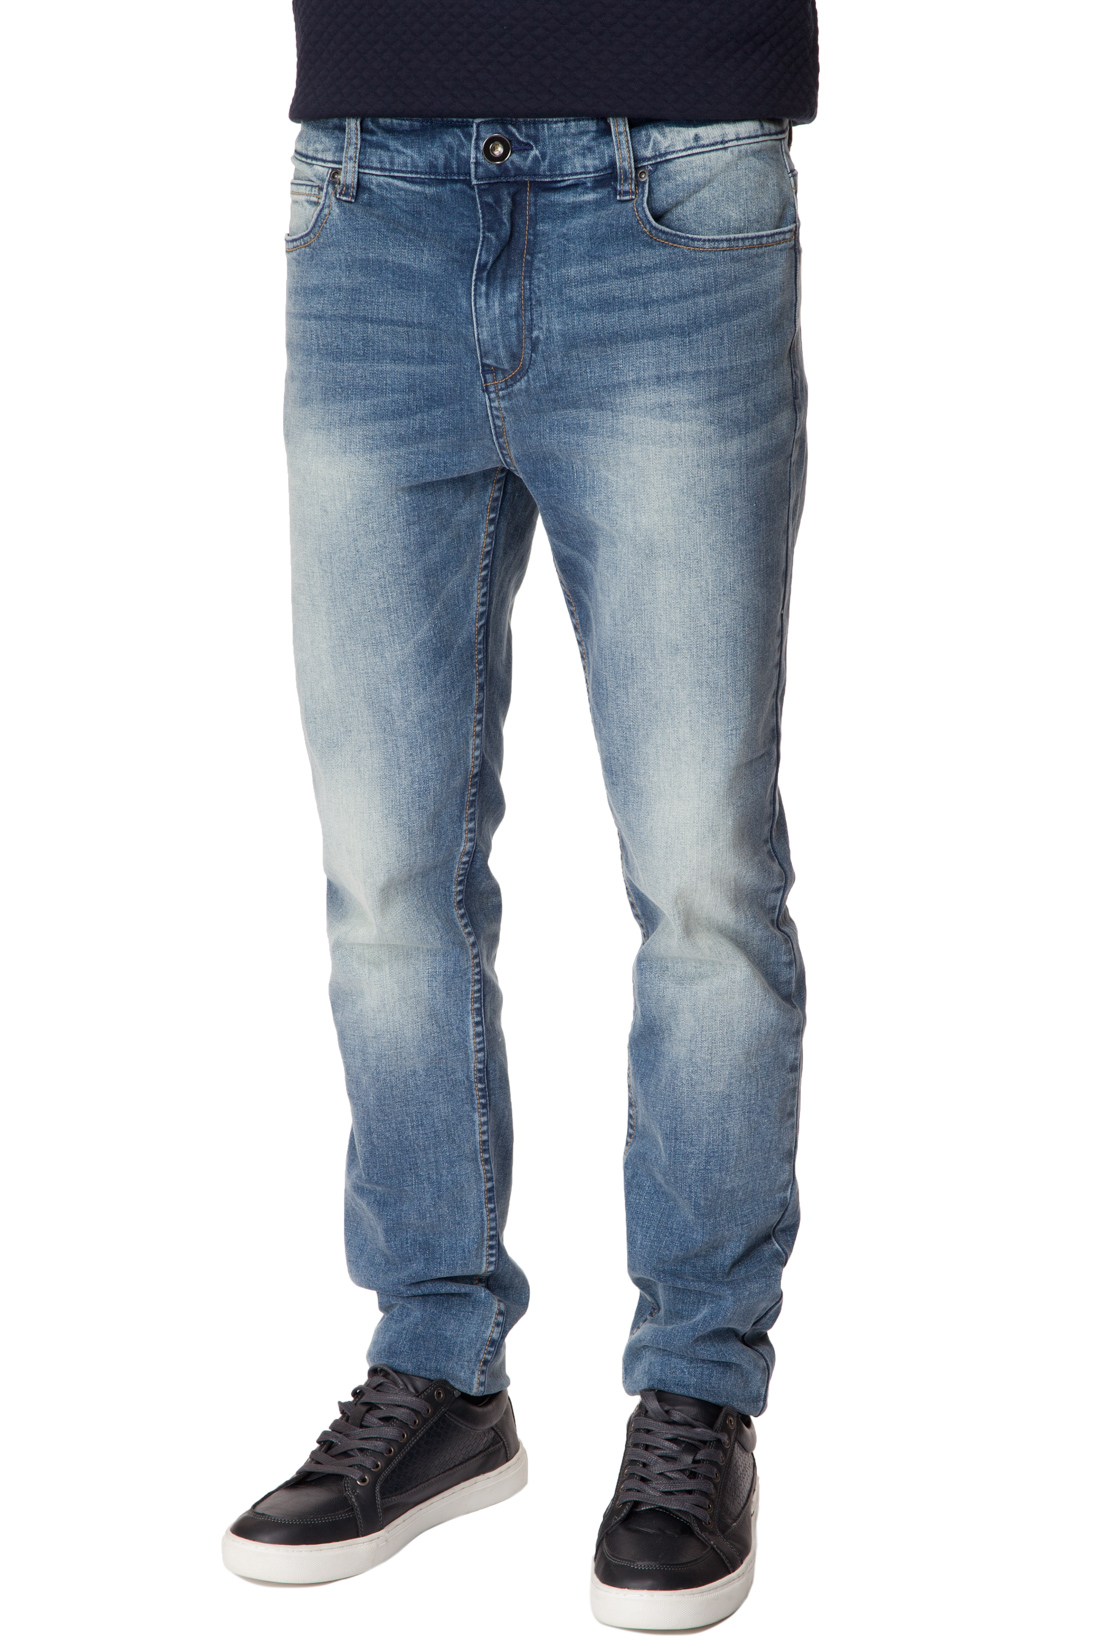 Зауженные джинсы с выбеленностями (арт. baon B807005), размер 33, цвет blue denim#голубой